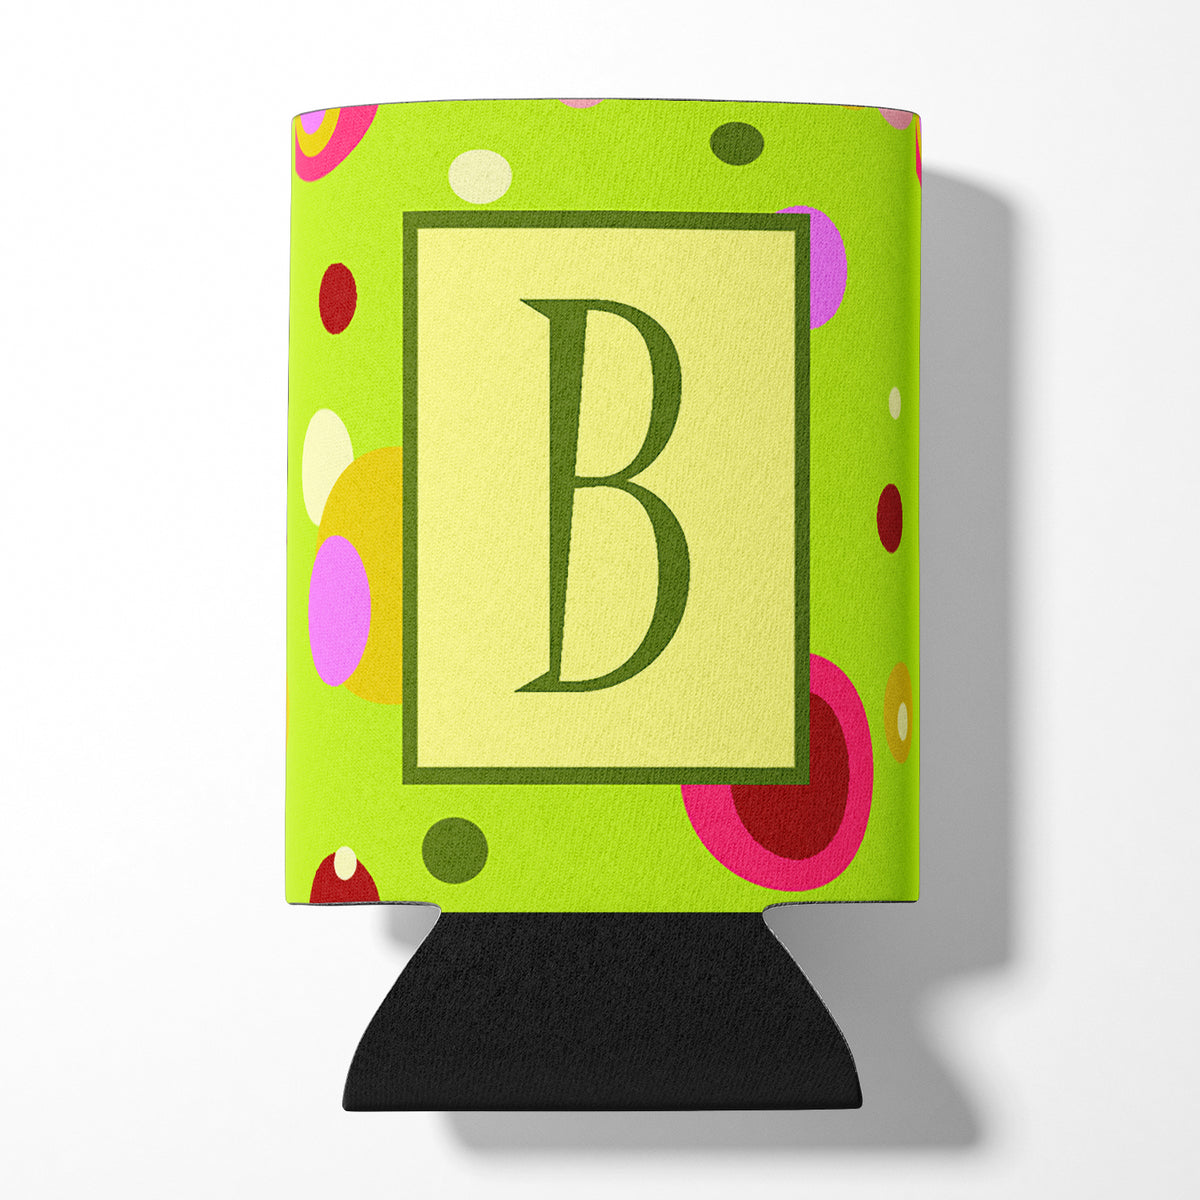 Letter B Initial Monogram - Green Can or Bottle Beverage Insulator Hugger.